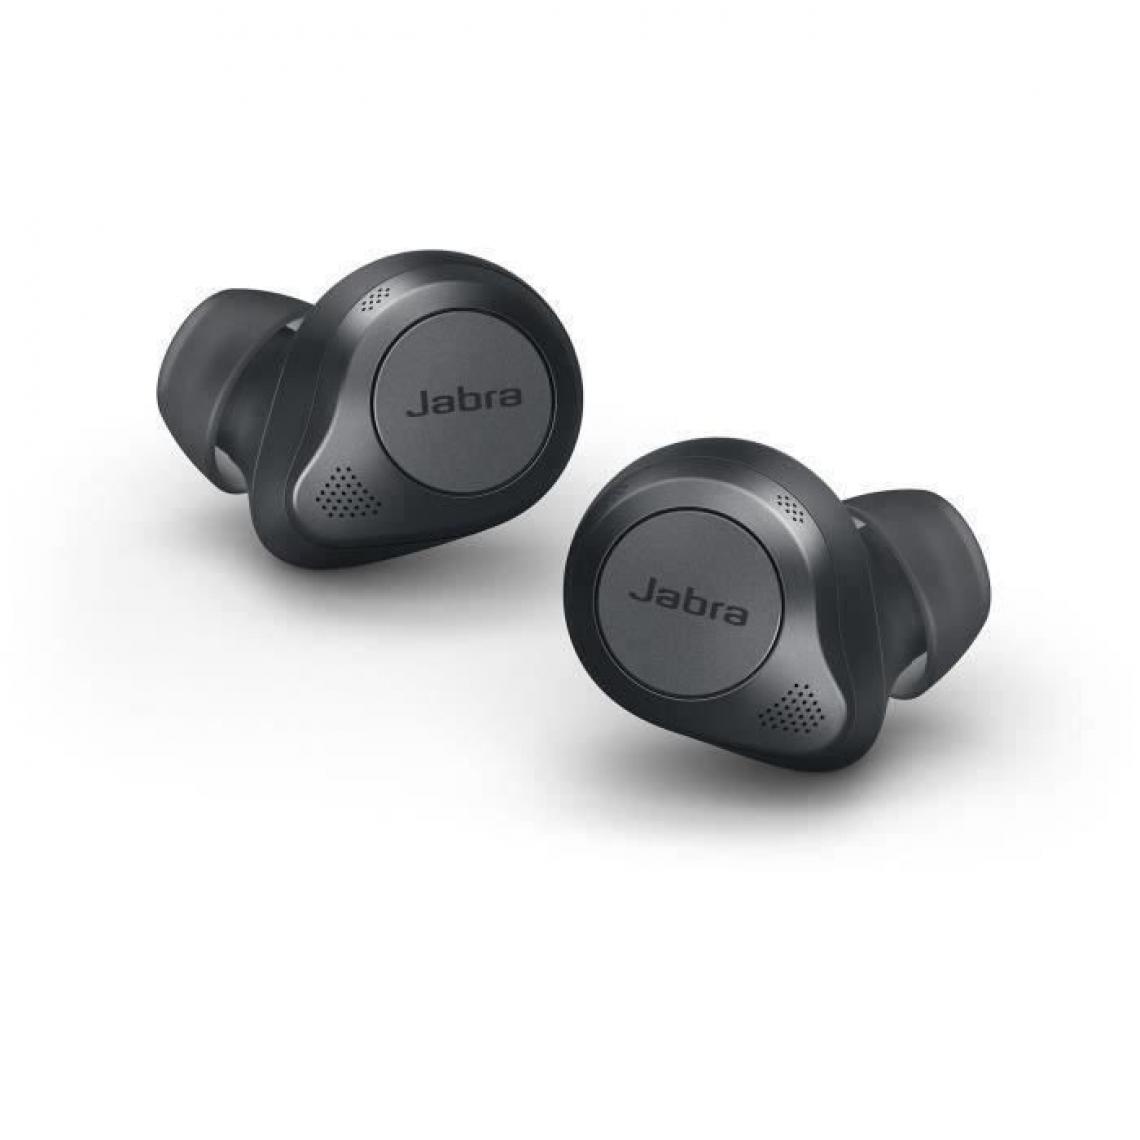 Jabra - JABRA Elite 85t - Ecouteurs Bluetooth avec reduction de bruit personnalisable - Format mini true wireless - Gris anthracite - Casque